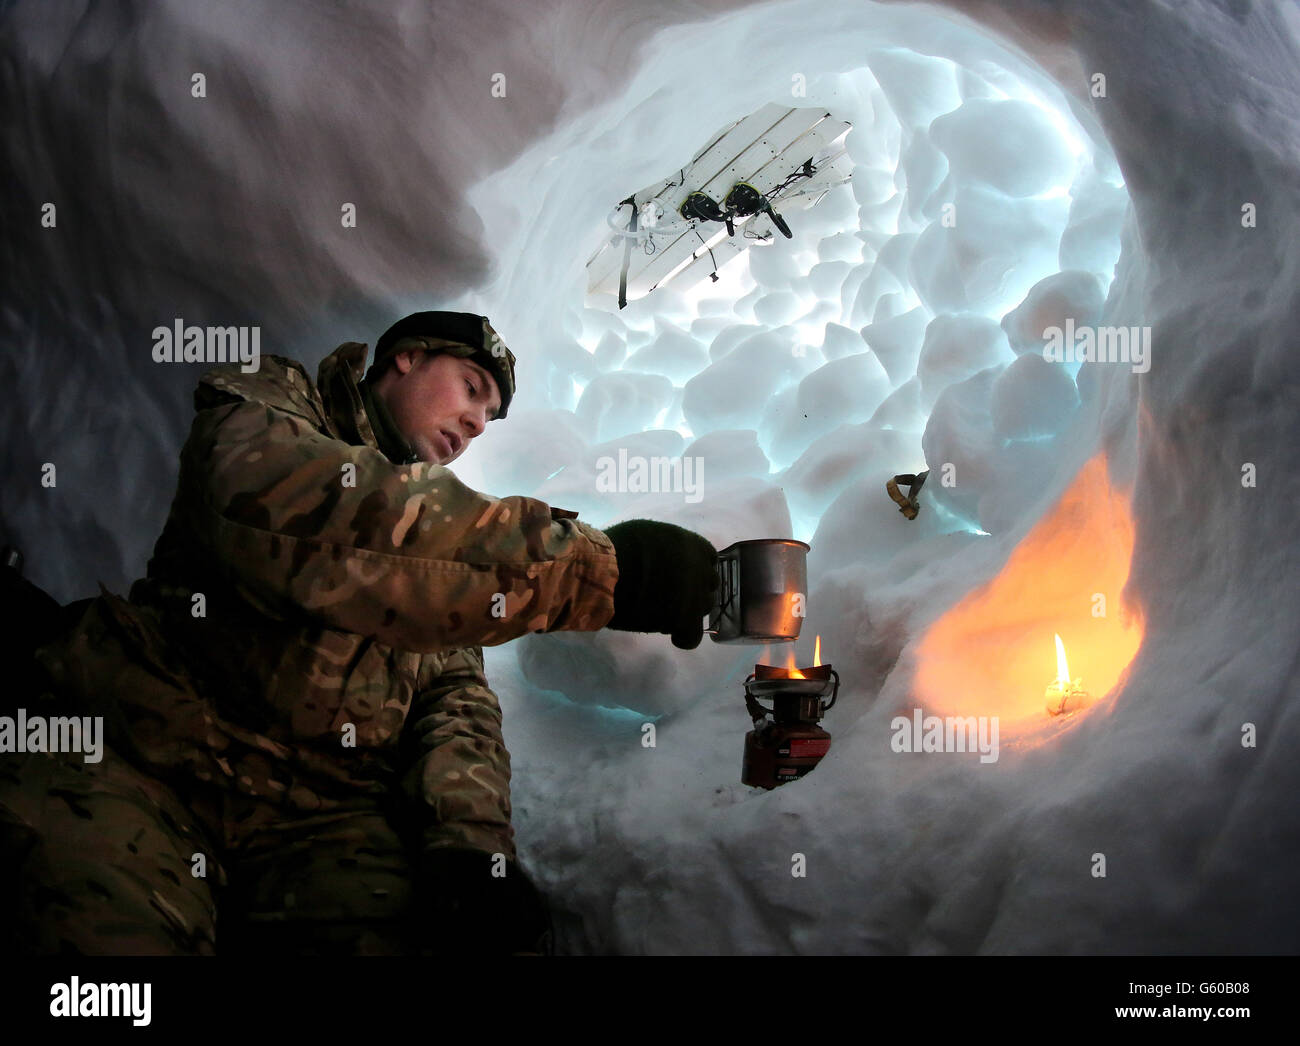 Marine Alistair McGoldrick de Chorley bout l'eau de la neige dans son trou de neige qu'ils ont construit et campé, comme les troupes prennent part à l'exercice 2013,Qui met l'accent sur la survie par temps froid et l'entraînement de guerre pour les réservistes de Royal Marines Commando dans la chaîne de montagnes près de Porsanger Garrison près de Lakselv, en Norvège. Banque D'Images